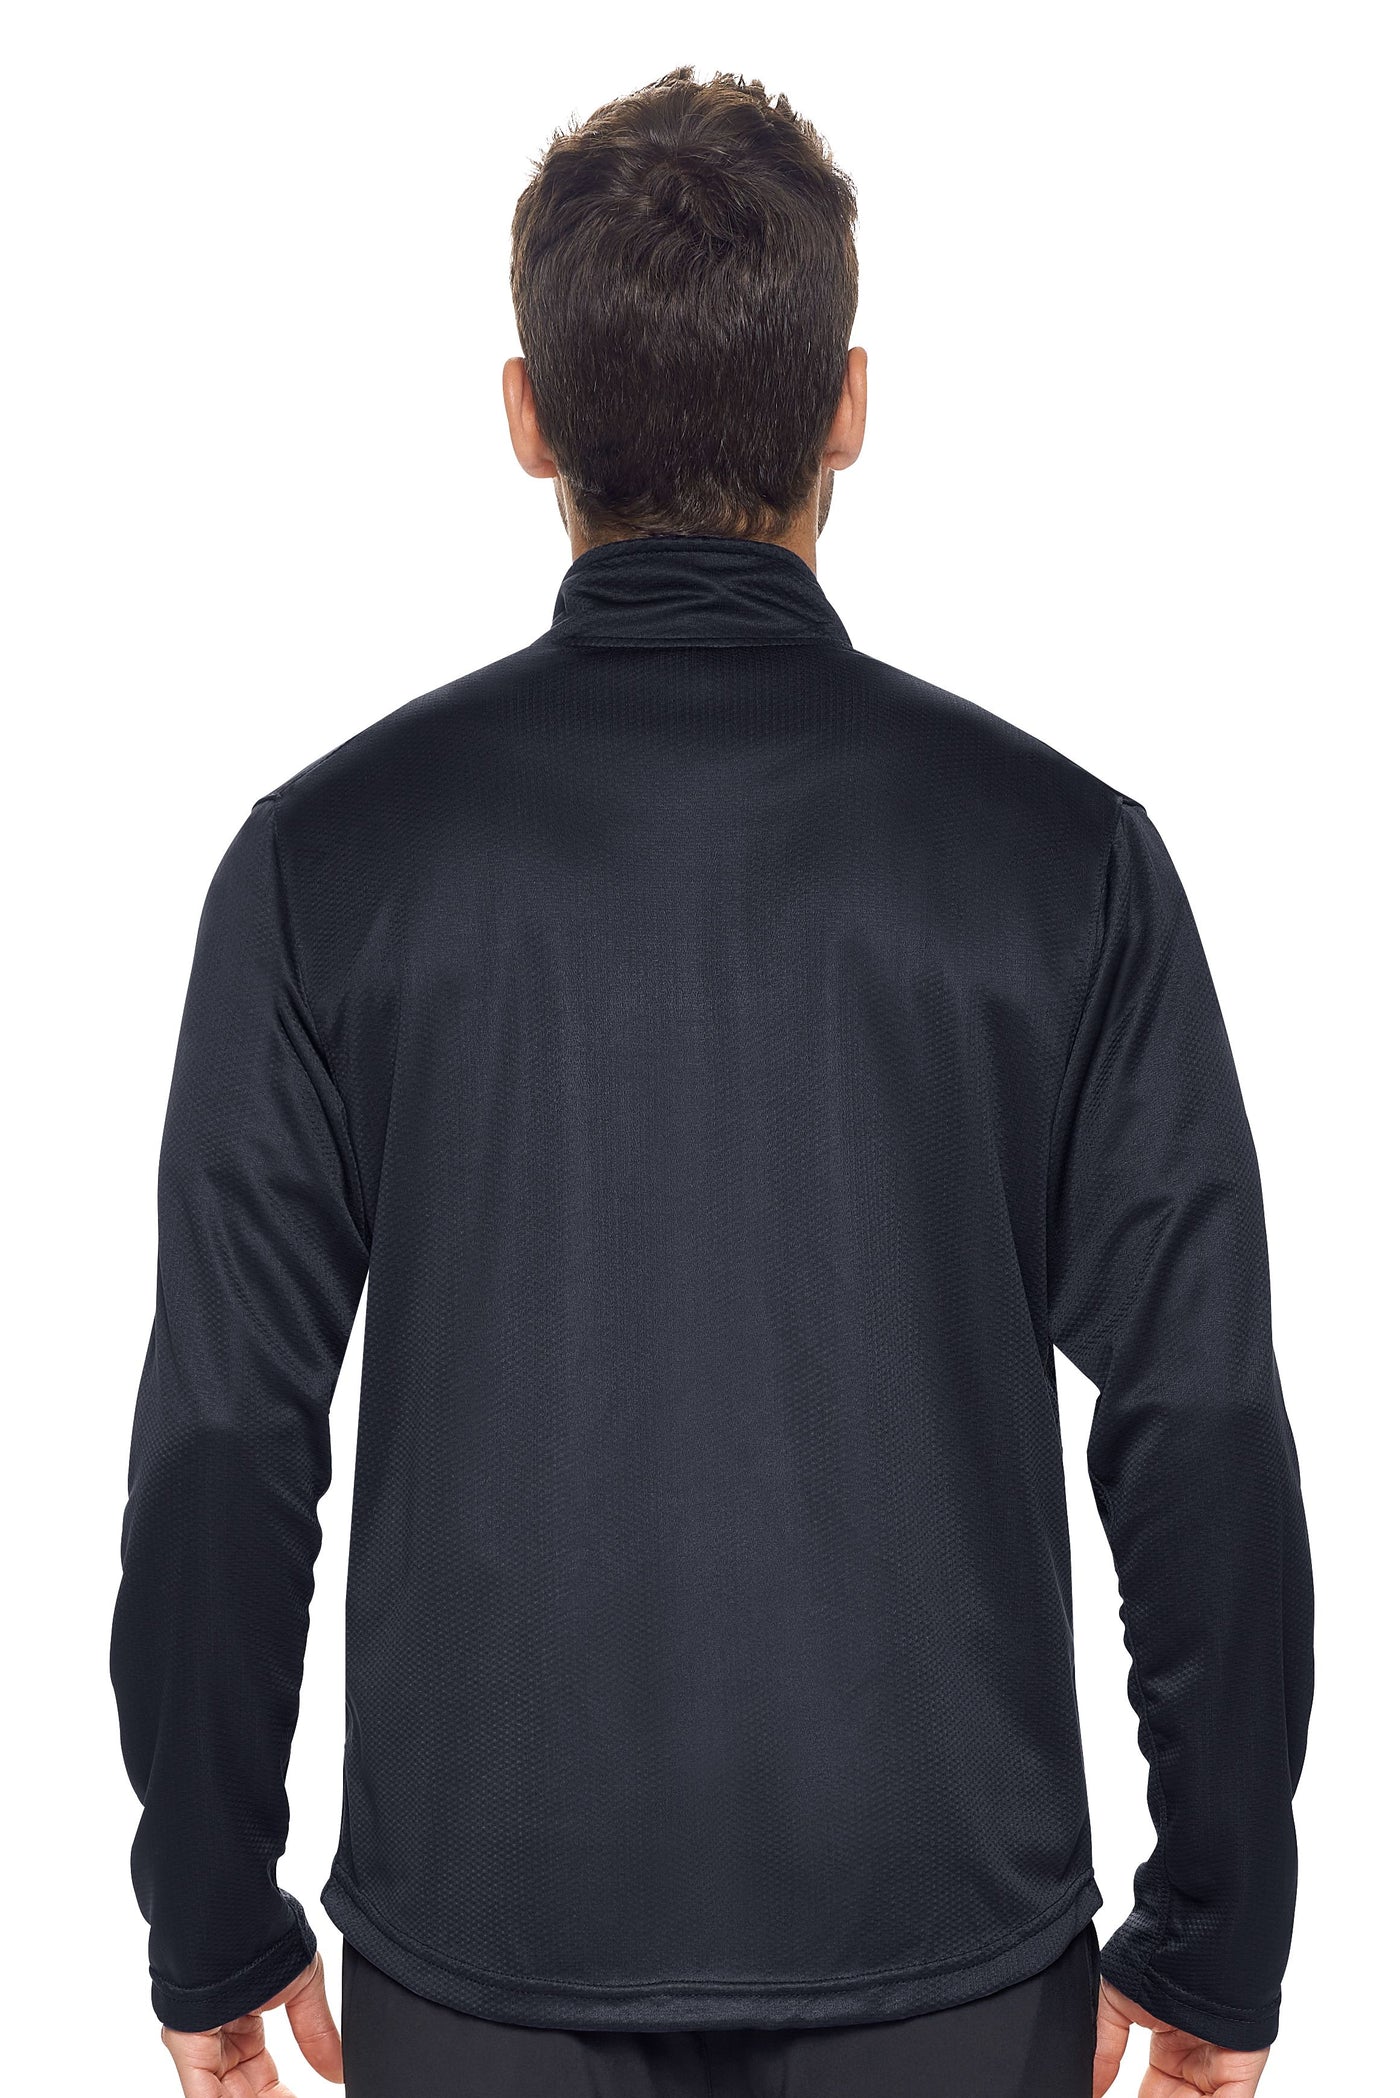 Expert Apparel Men's Sportsman Jacket in Black 3#color_black